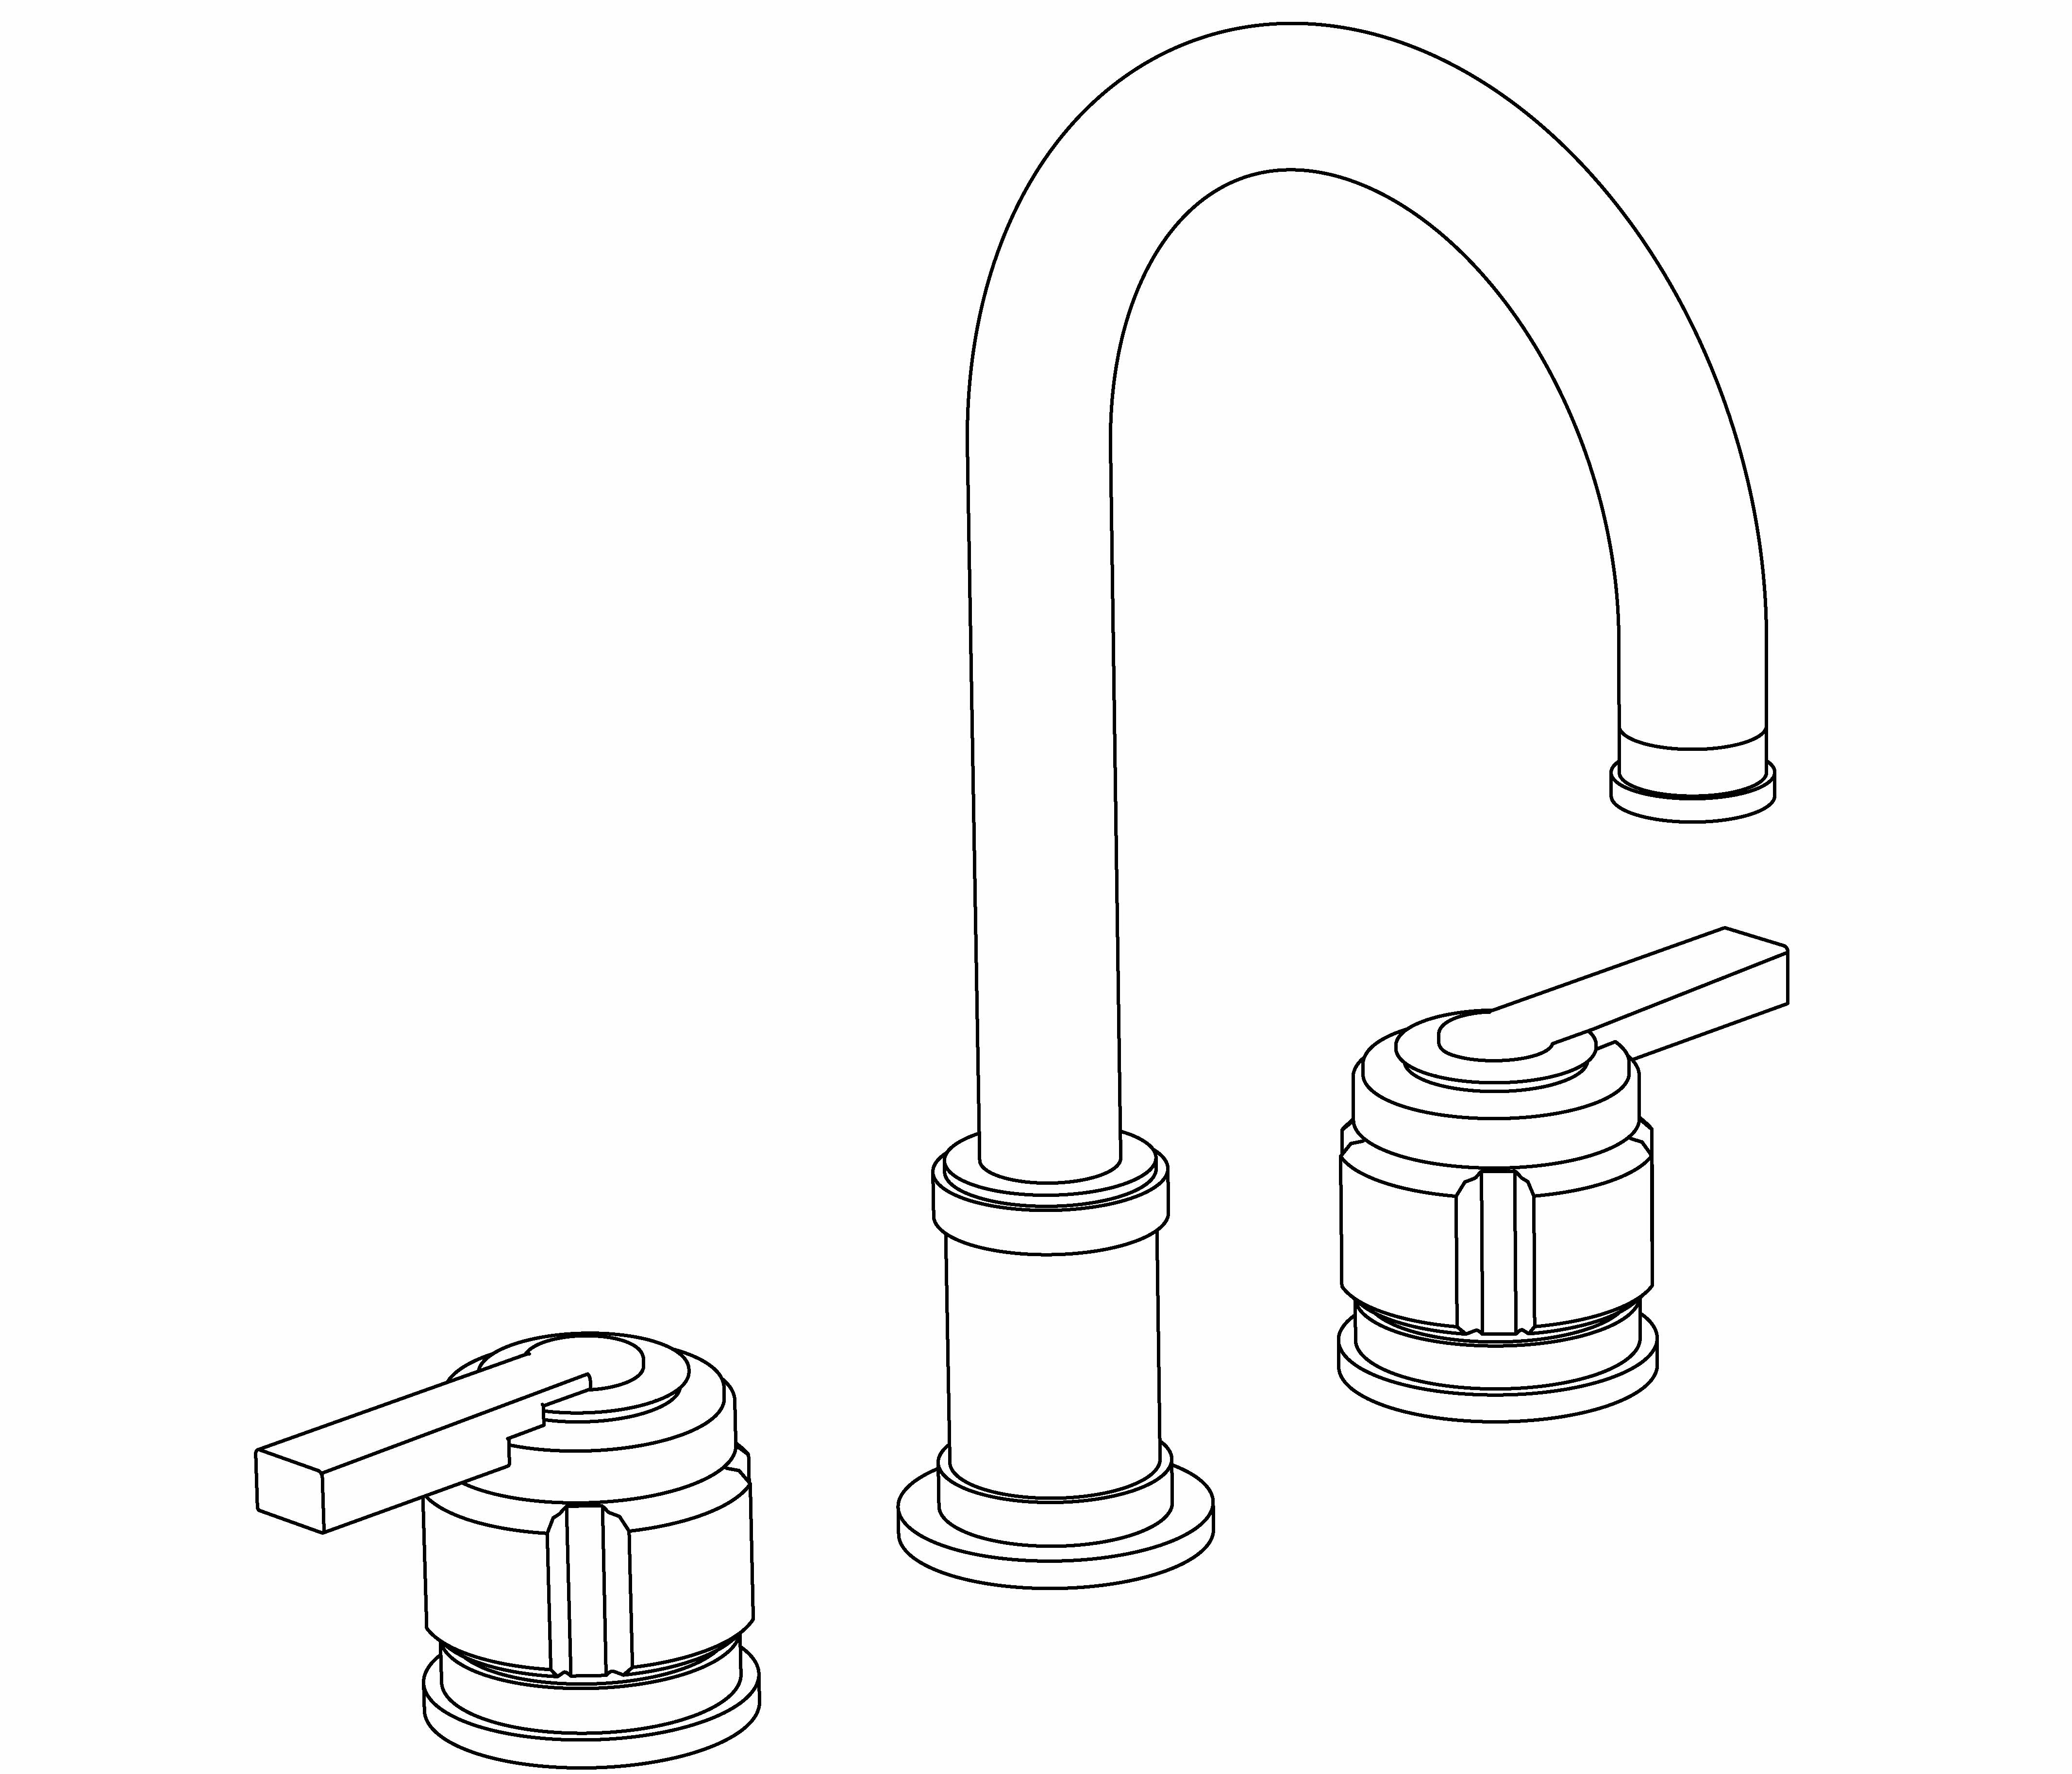 S86-1302 3-hole basin mixer